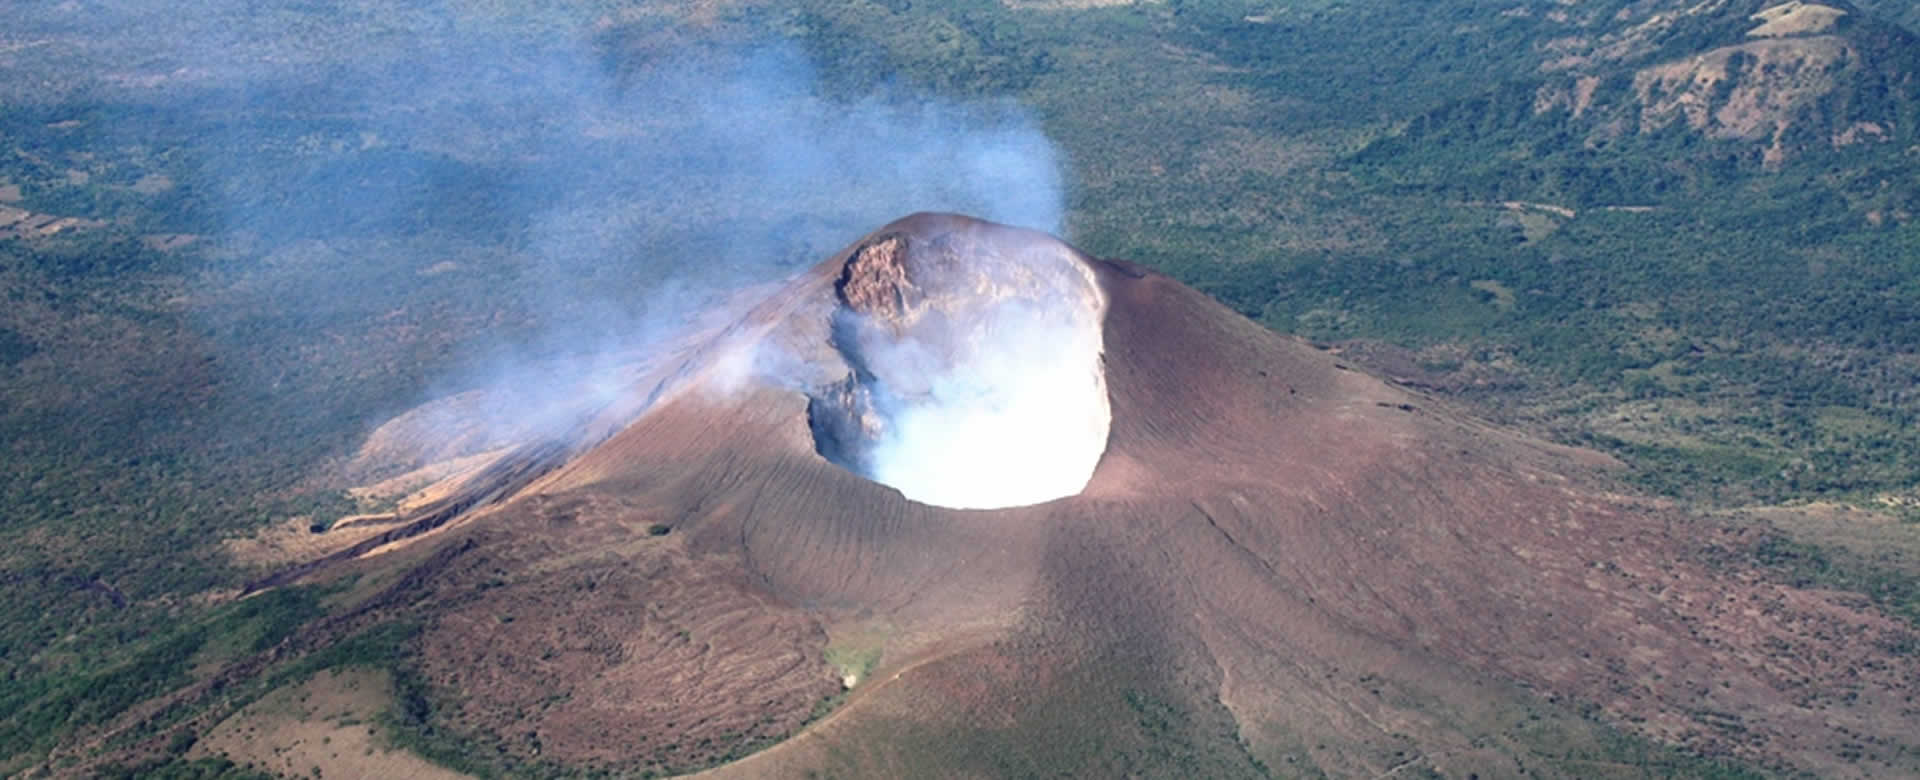 National Geographic destaca volcanes de Nicaragua en la portada de su revista Traveller